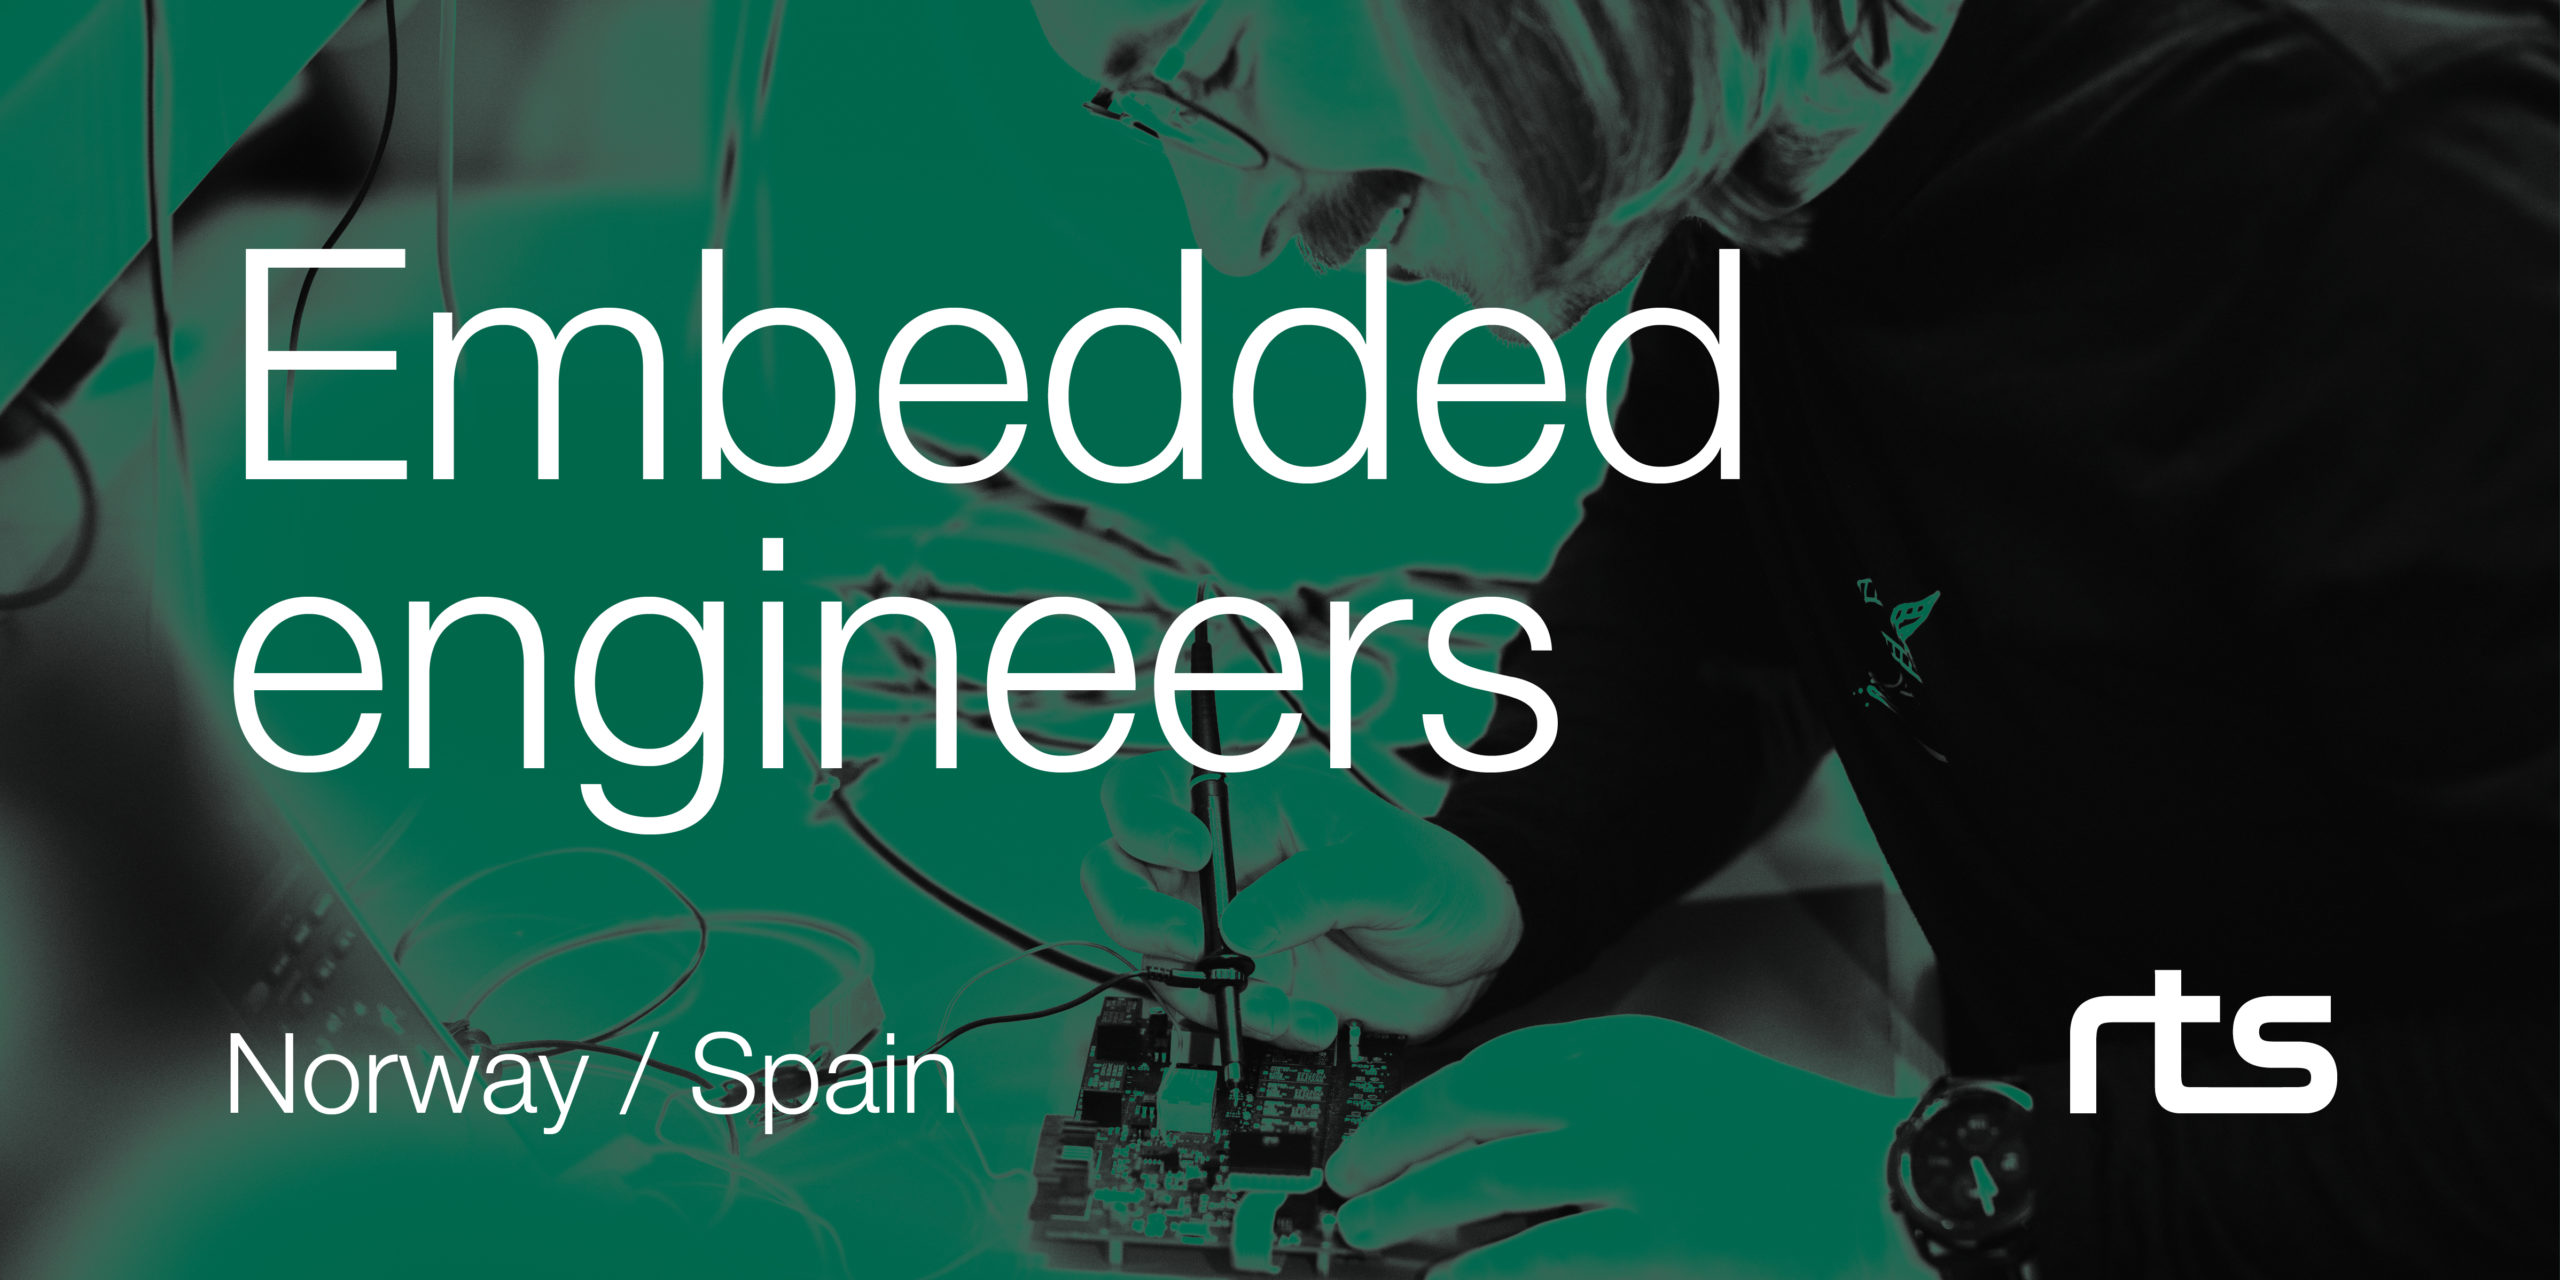 Embedded engineers (Norway/Spain)